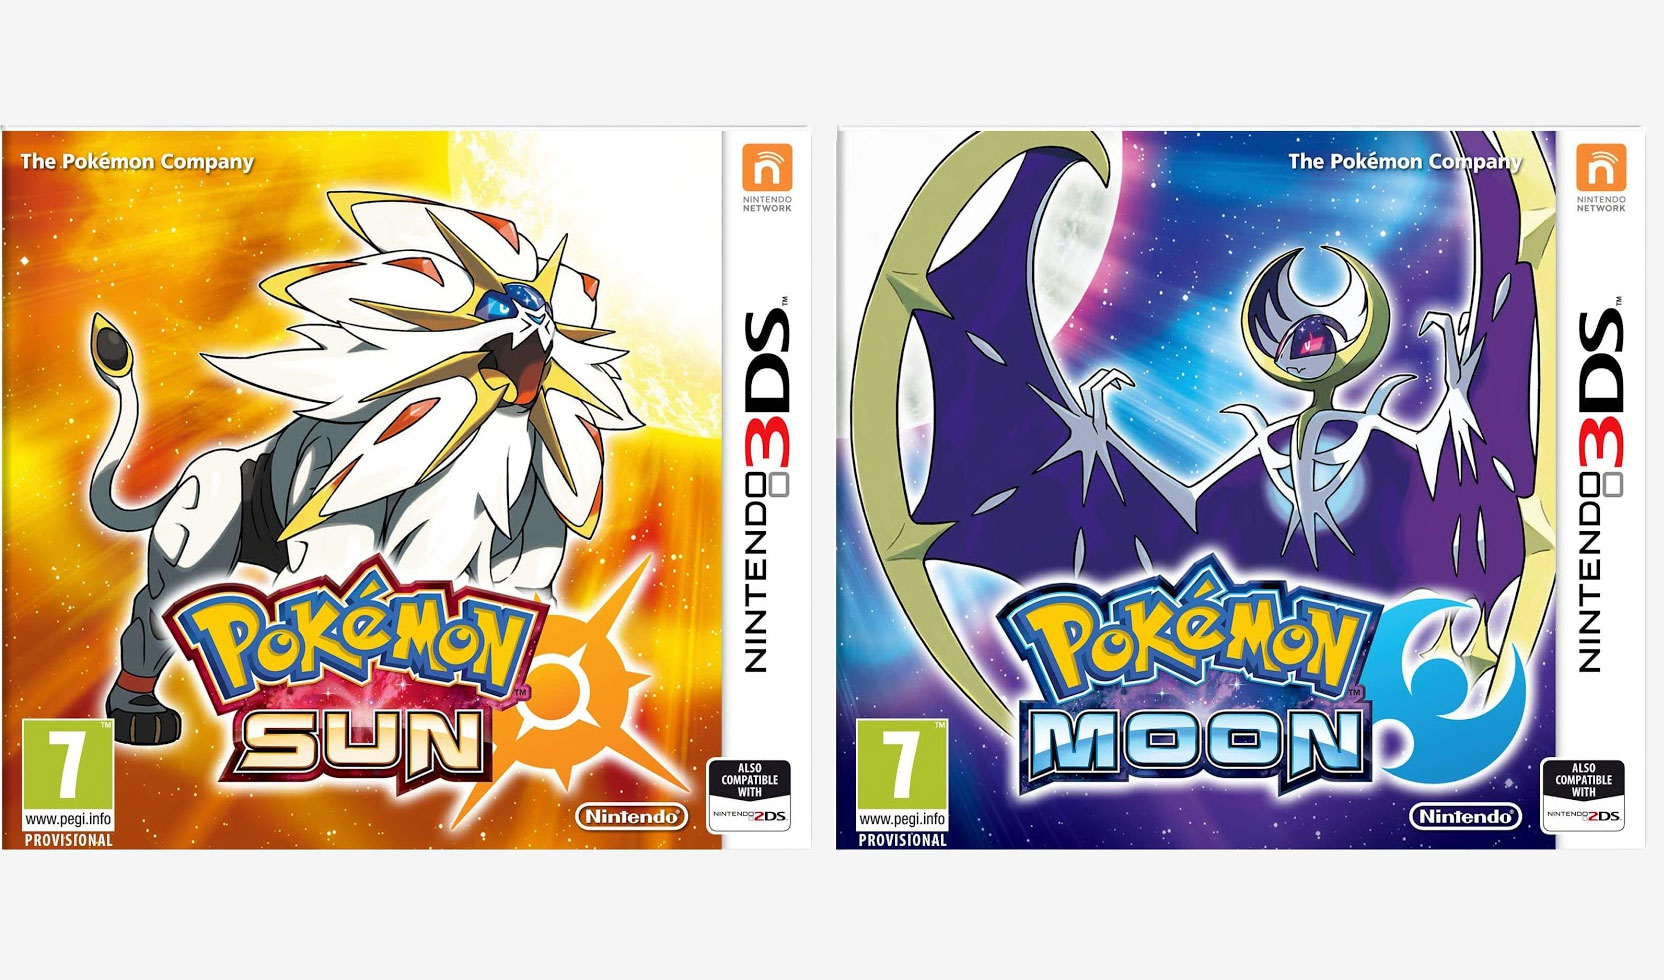 Annunciati ufficialmente starter, leggendari, e data di uscita di Pokemon Sole e luna